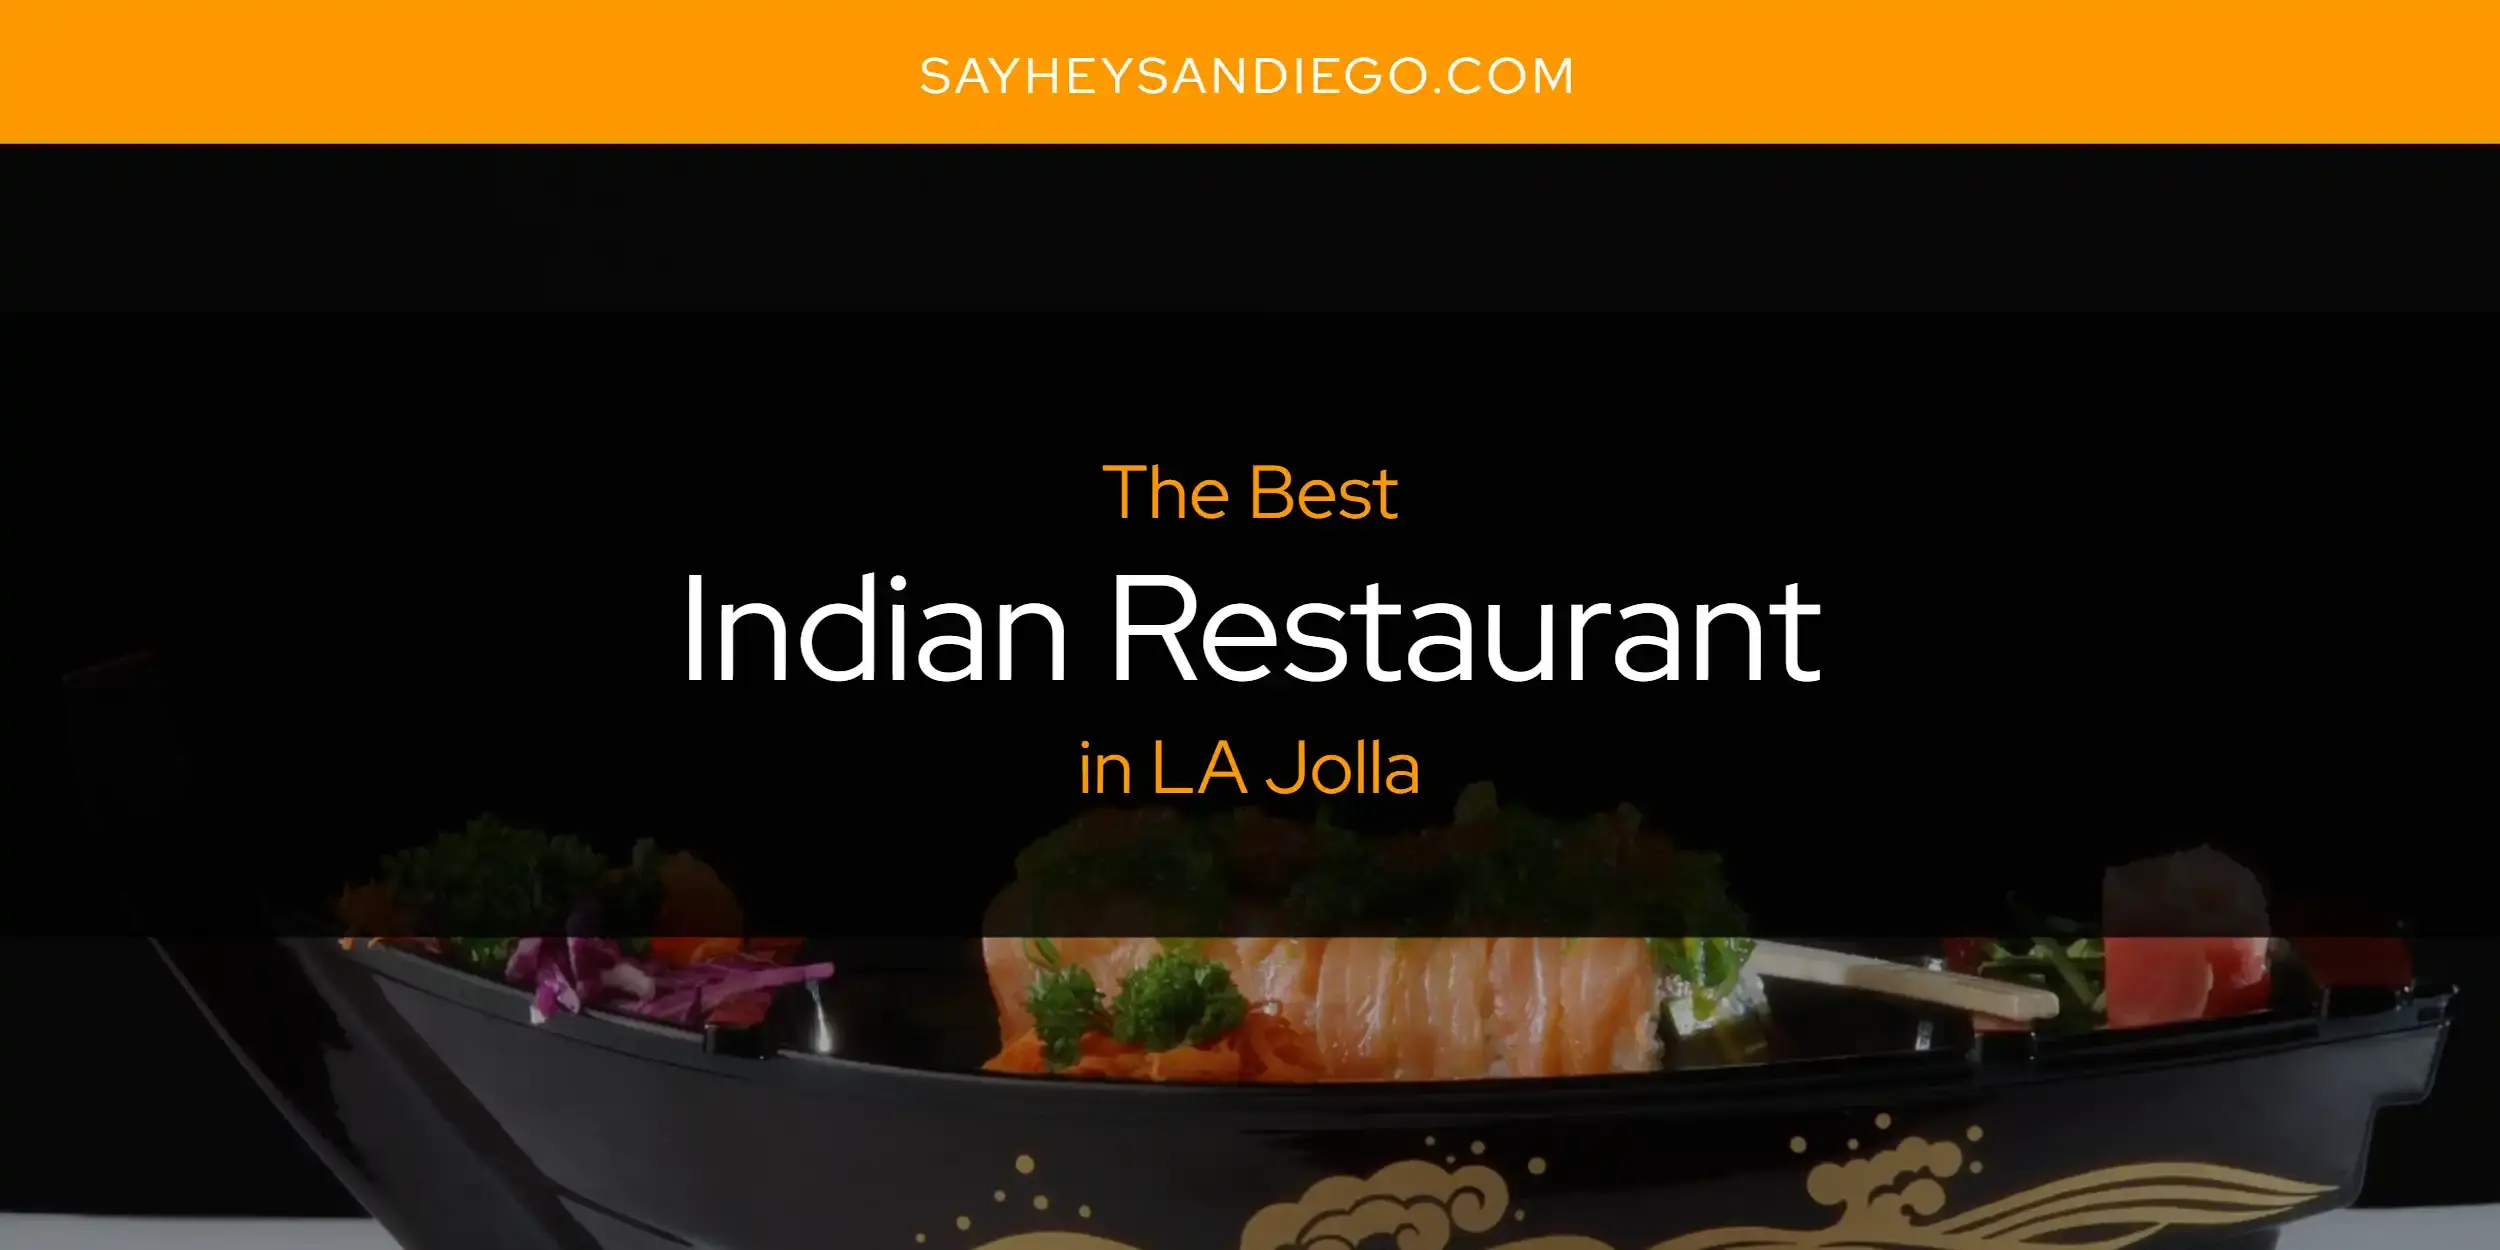 Best Indian Restaurant in LA Jolla? Here's the Top 13